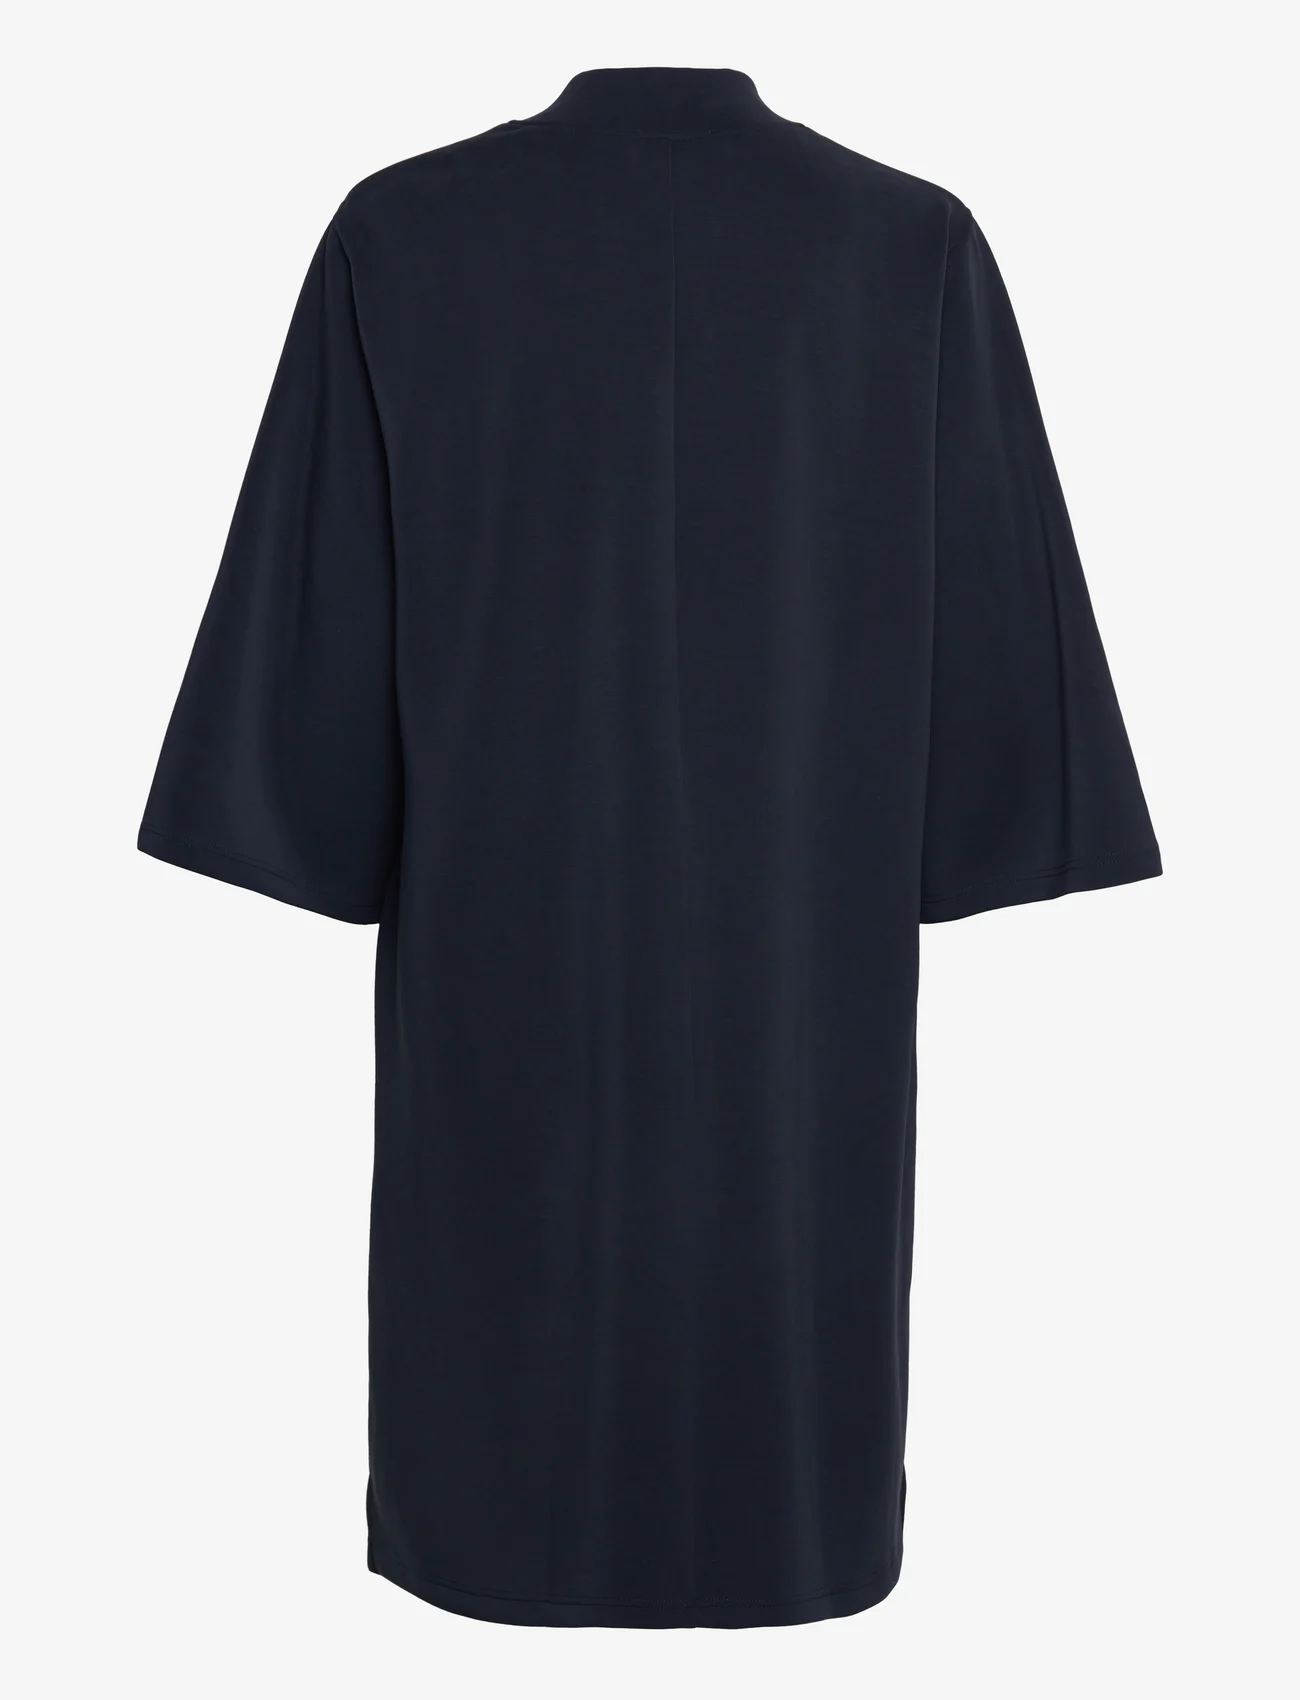 My Essential Wardrobe - ElleMW Lana Dress - t-skjortekjoler - dark sapphire blue - 1